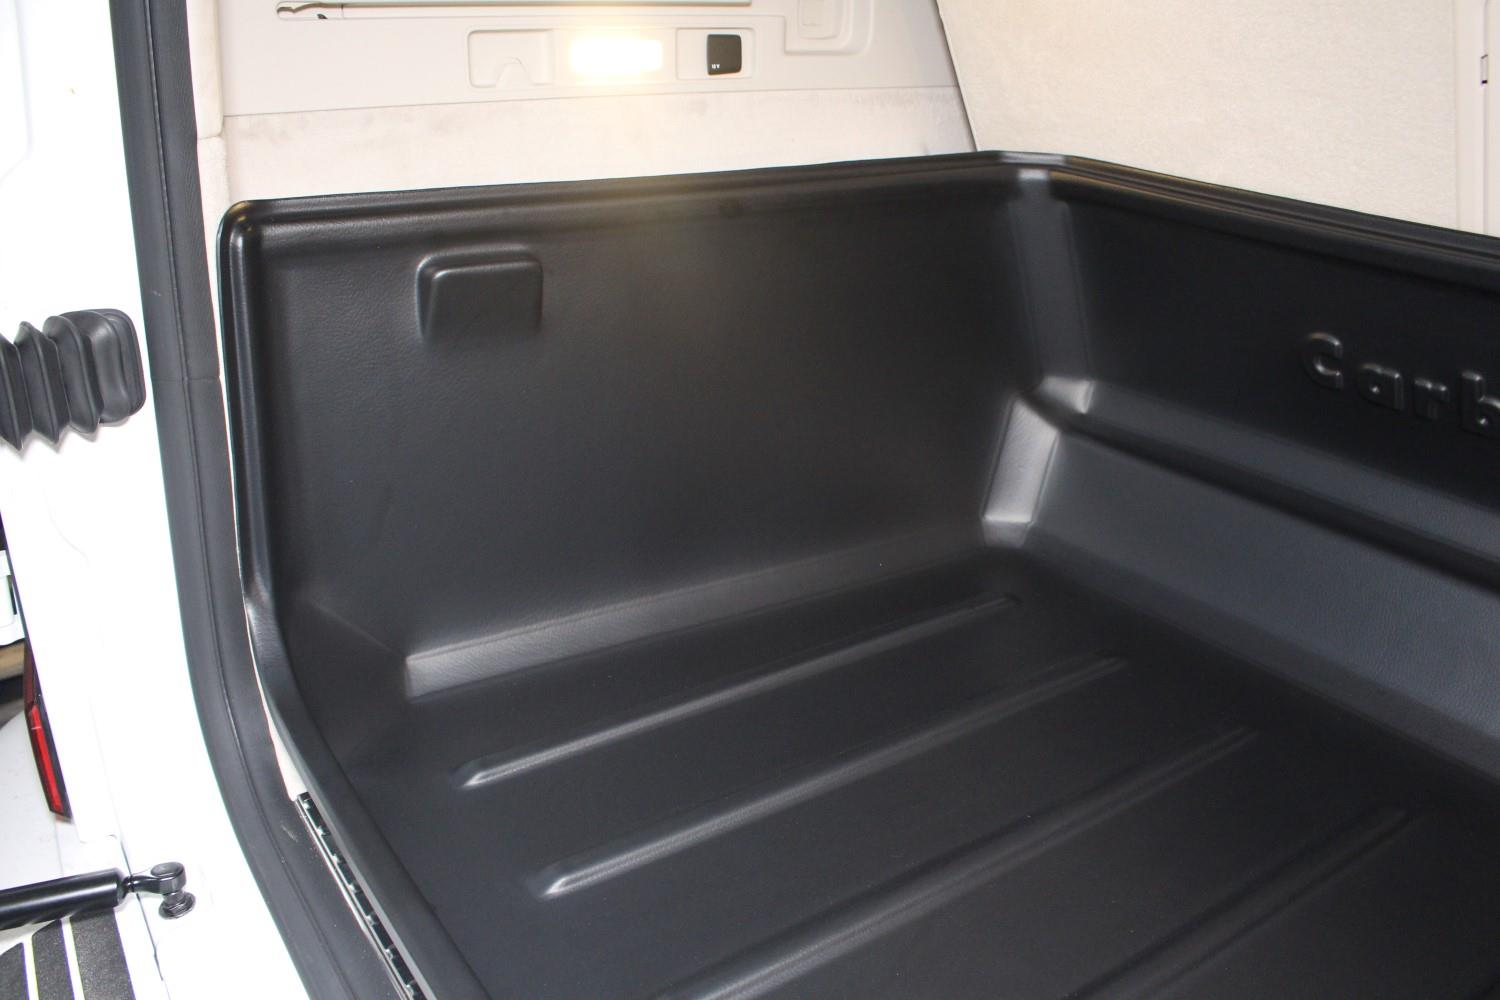 Kofferraumwanne Carbox Classic – Kofferraumschutz hoch